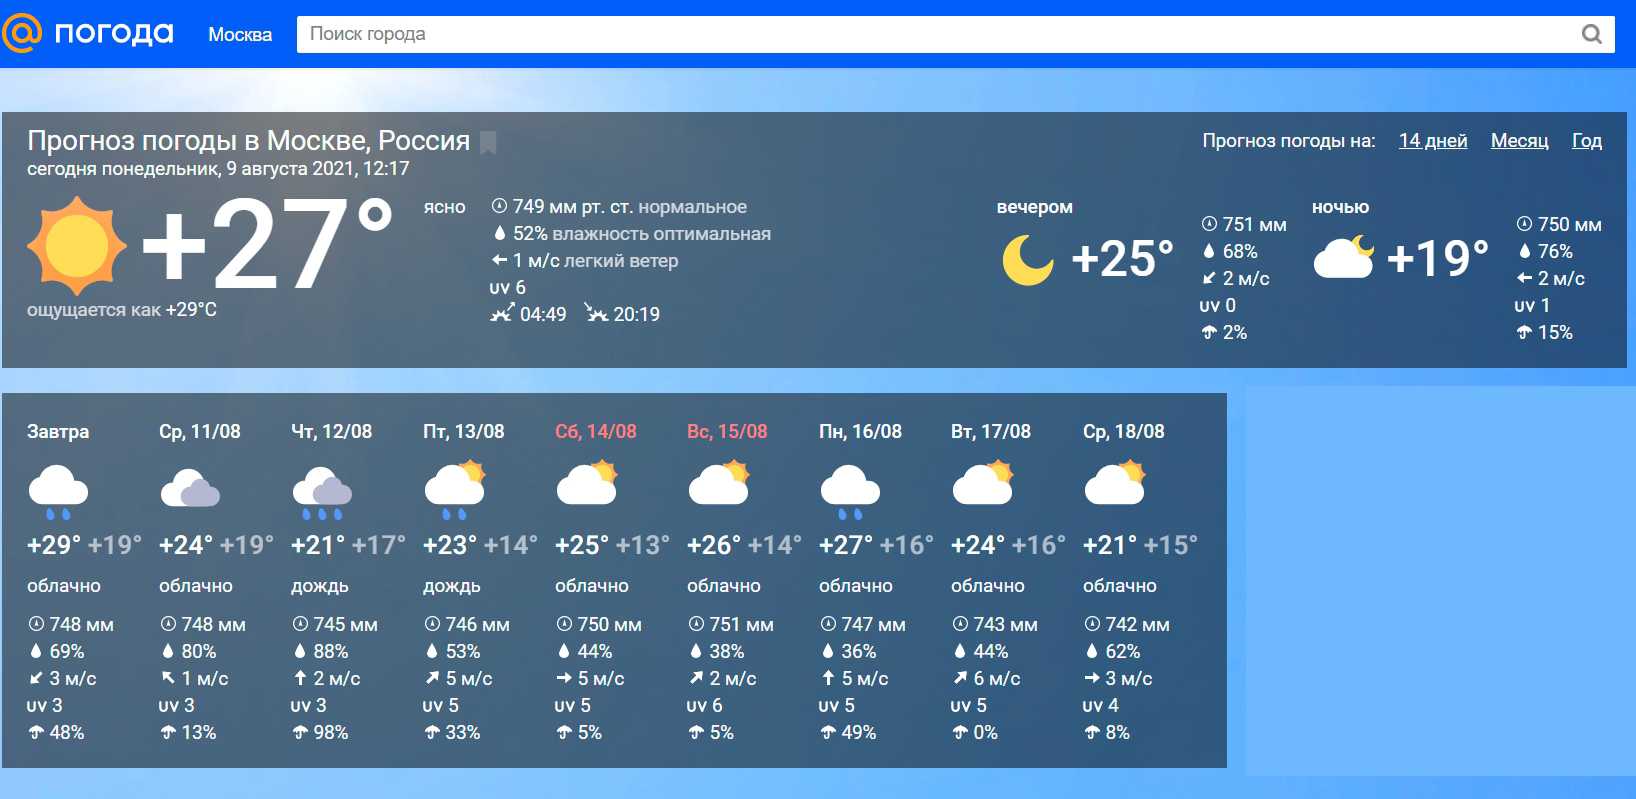 Санкт петербург прогноз погоды на две недели. Наиболее точный прогноз погоды.. Прогноз погоды в Москве. Какой лучший сайт прогноза погоды. Какая погода самая точная.